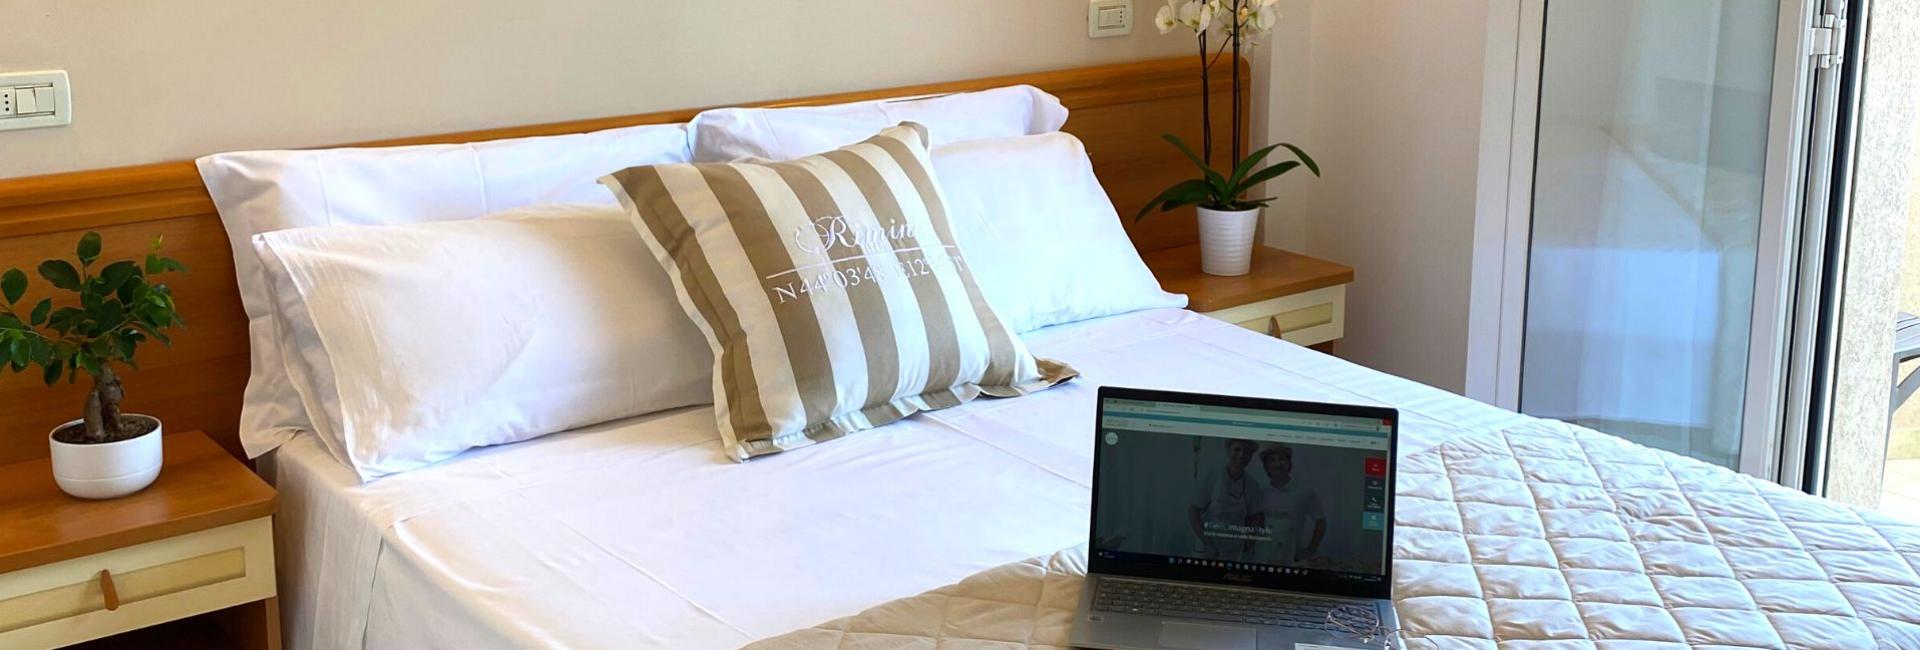 hotelapogeo it offerta-weekend-al-mare-tuffati-nella-primavera-di-rimini 007